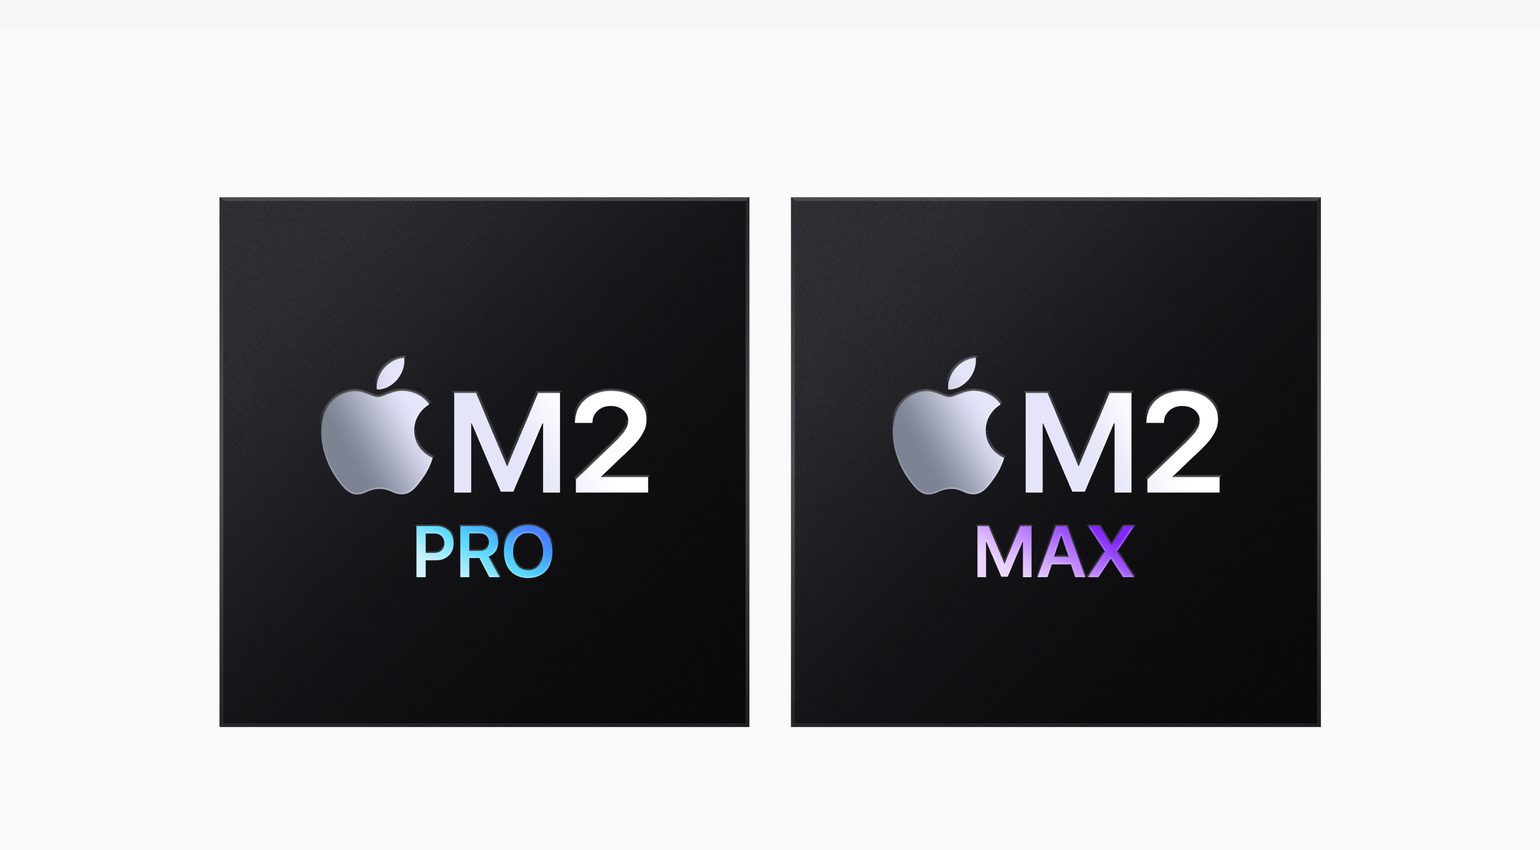 Die neuen CPUs von Apple M2 Pro und M2 Max